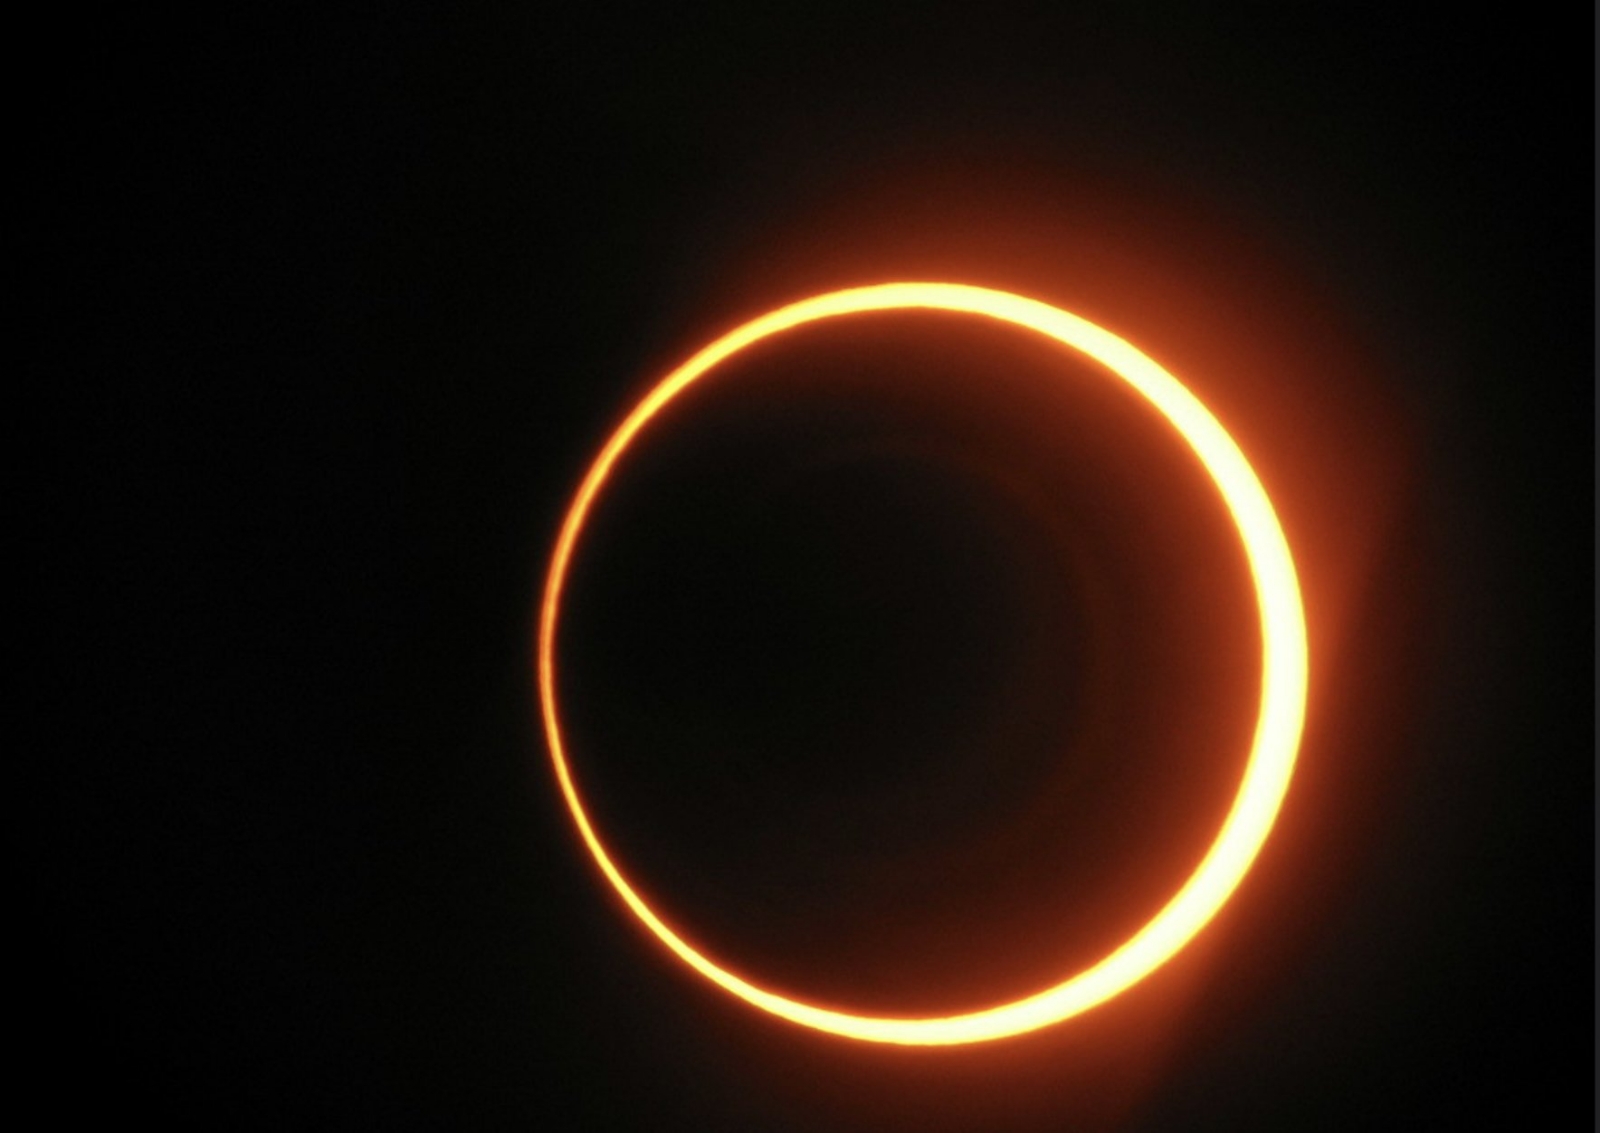 Se aconseja seguir recomendaciones para observar el eclipse de manera segura